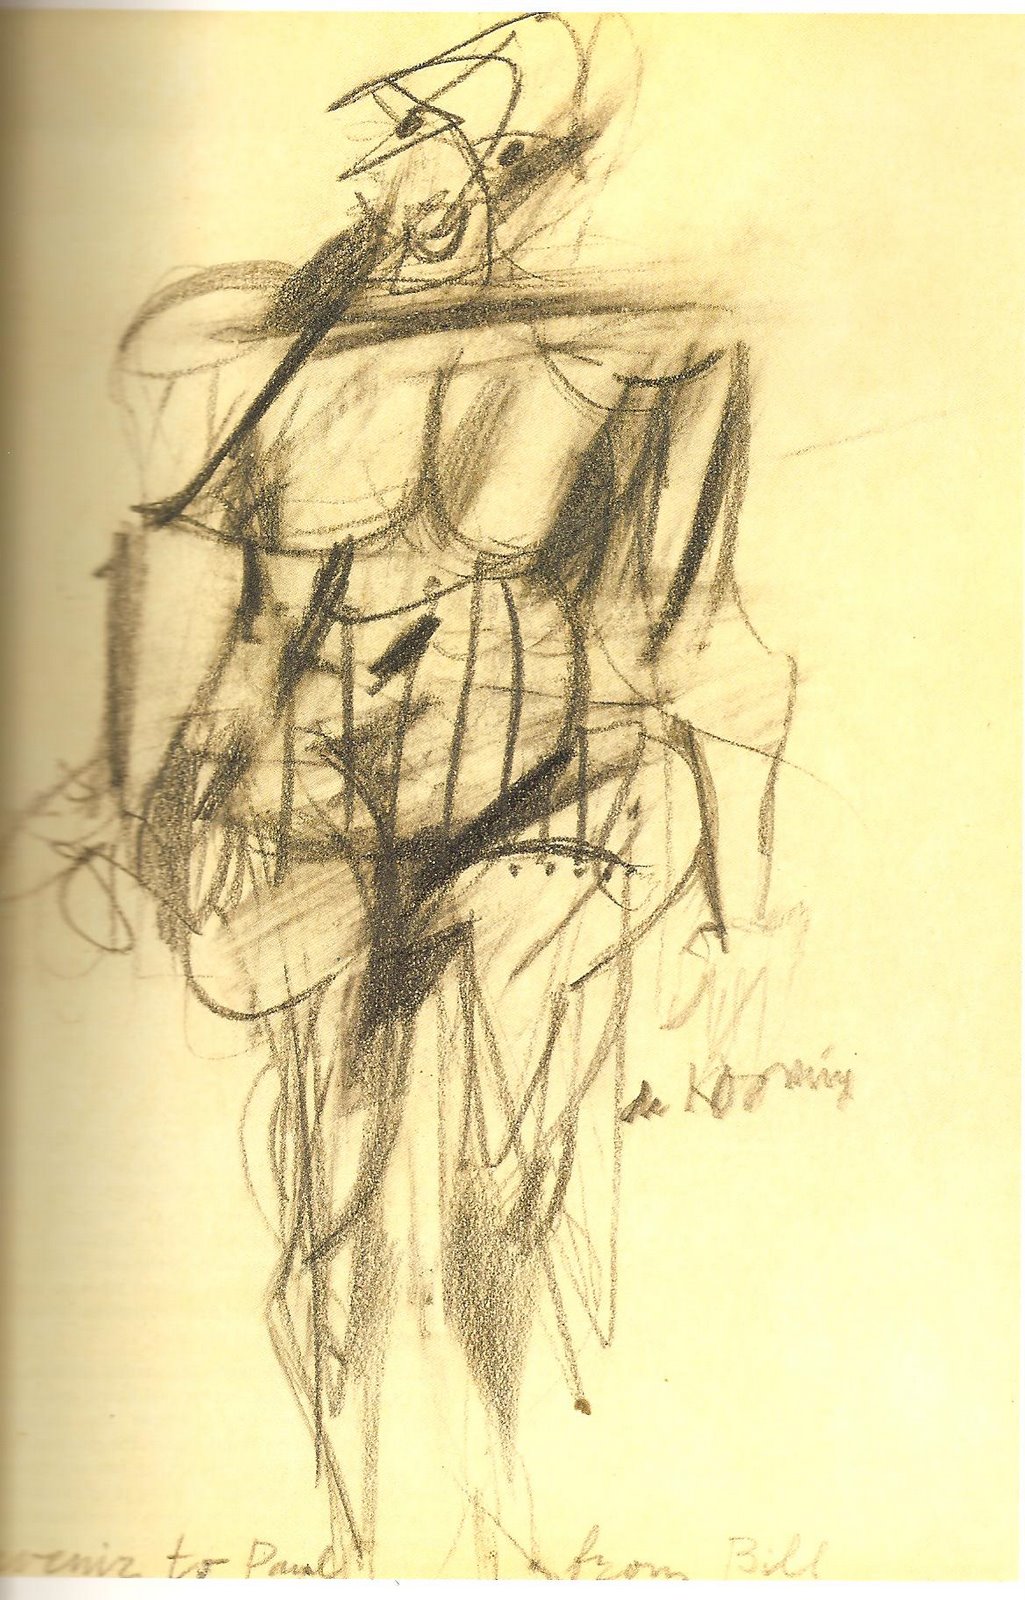 [Willem+De+Kooning+MUJER++1950-53.jpg]